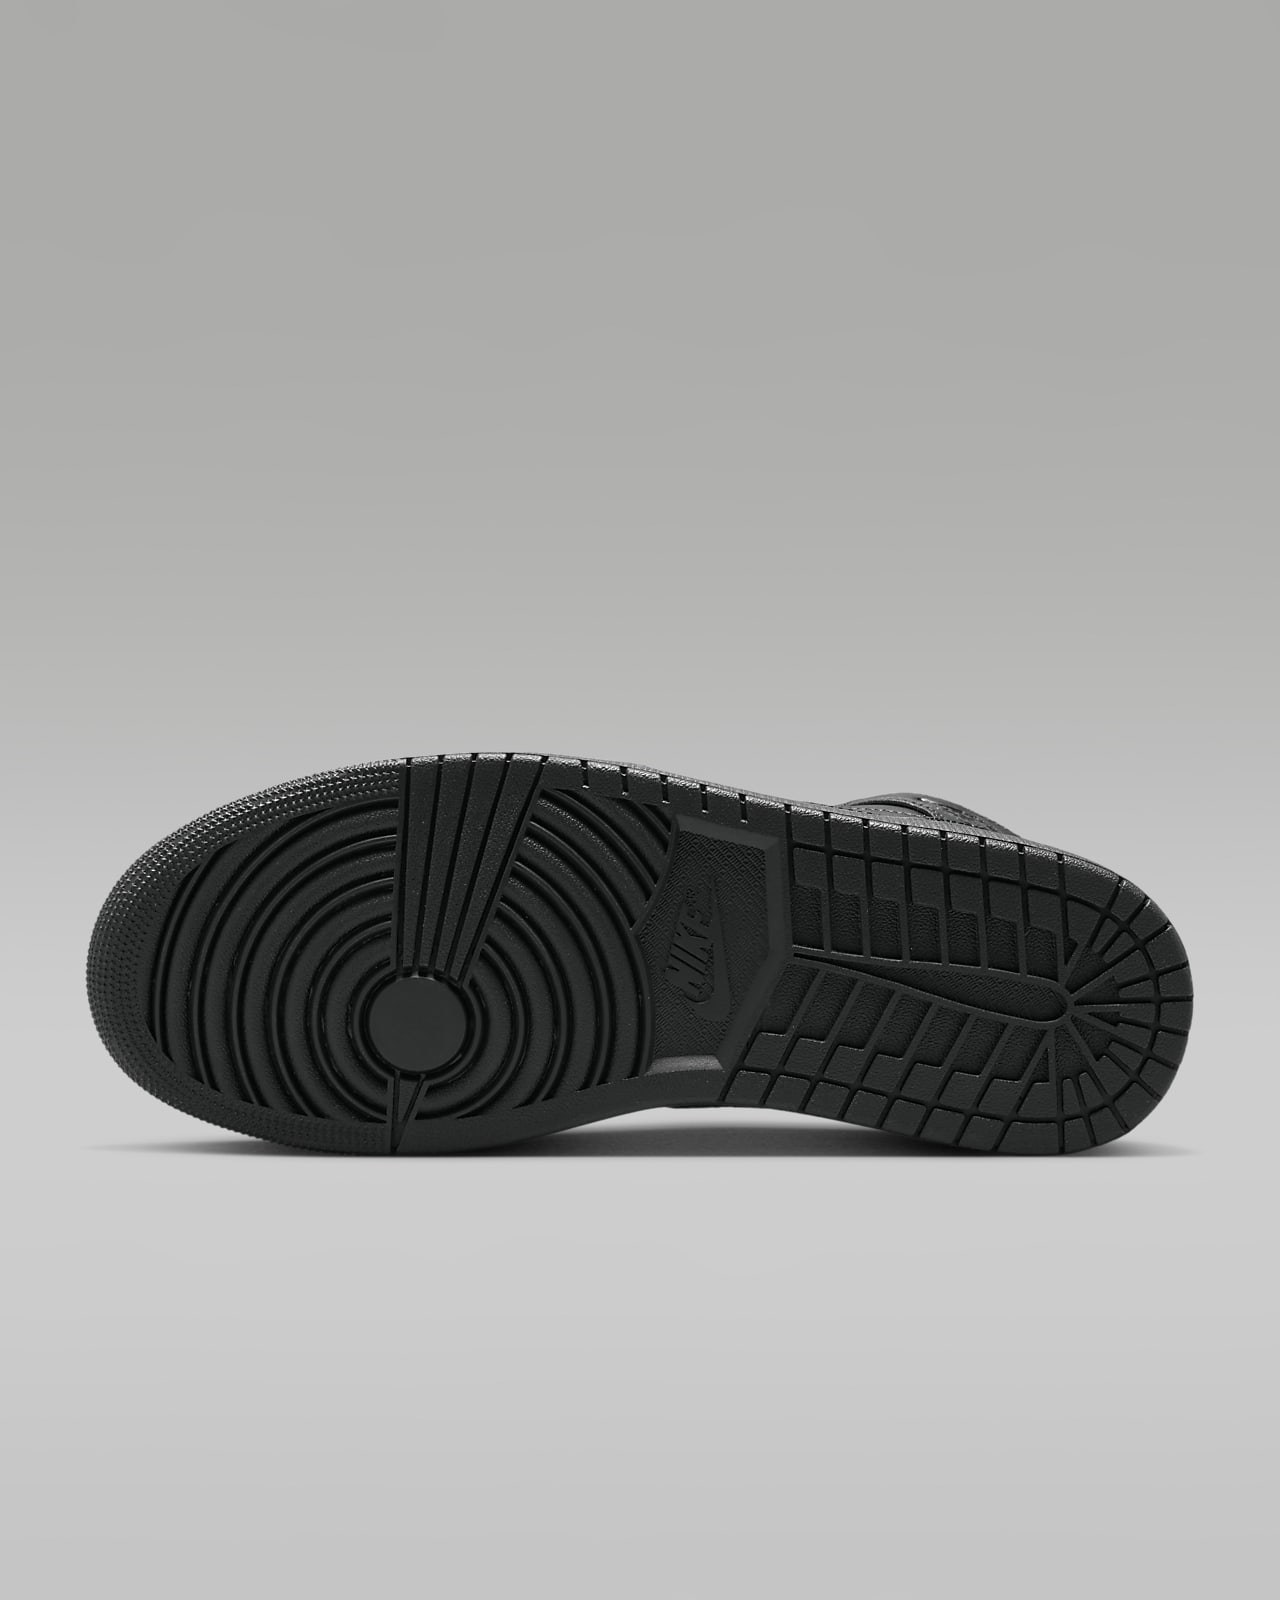 Men Sneakers Nike Air Jordan 1 Shoes, Size: 6 to 10